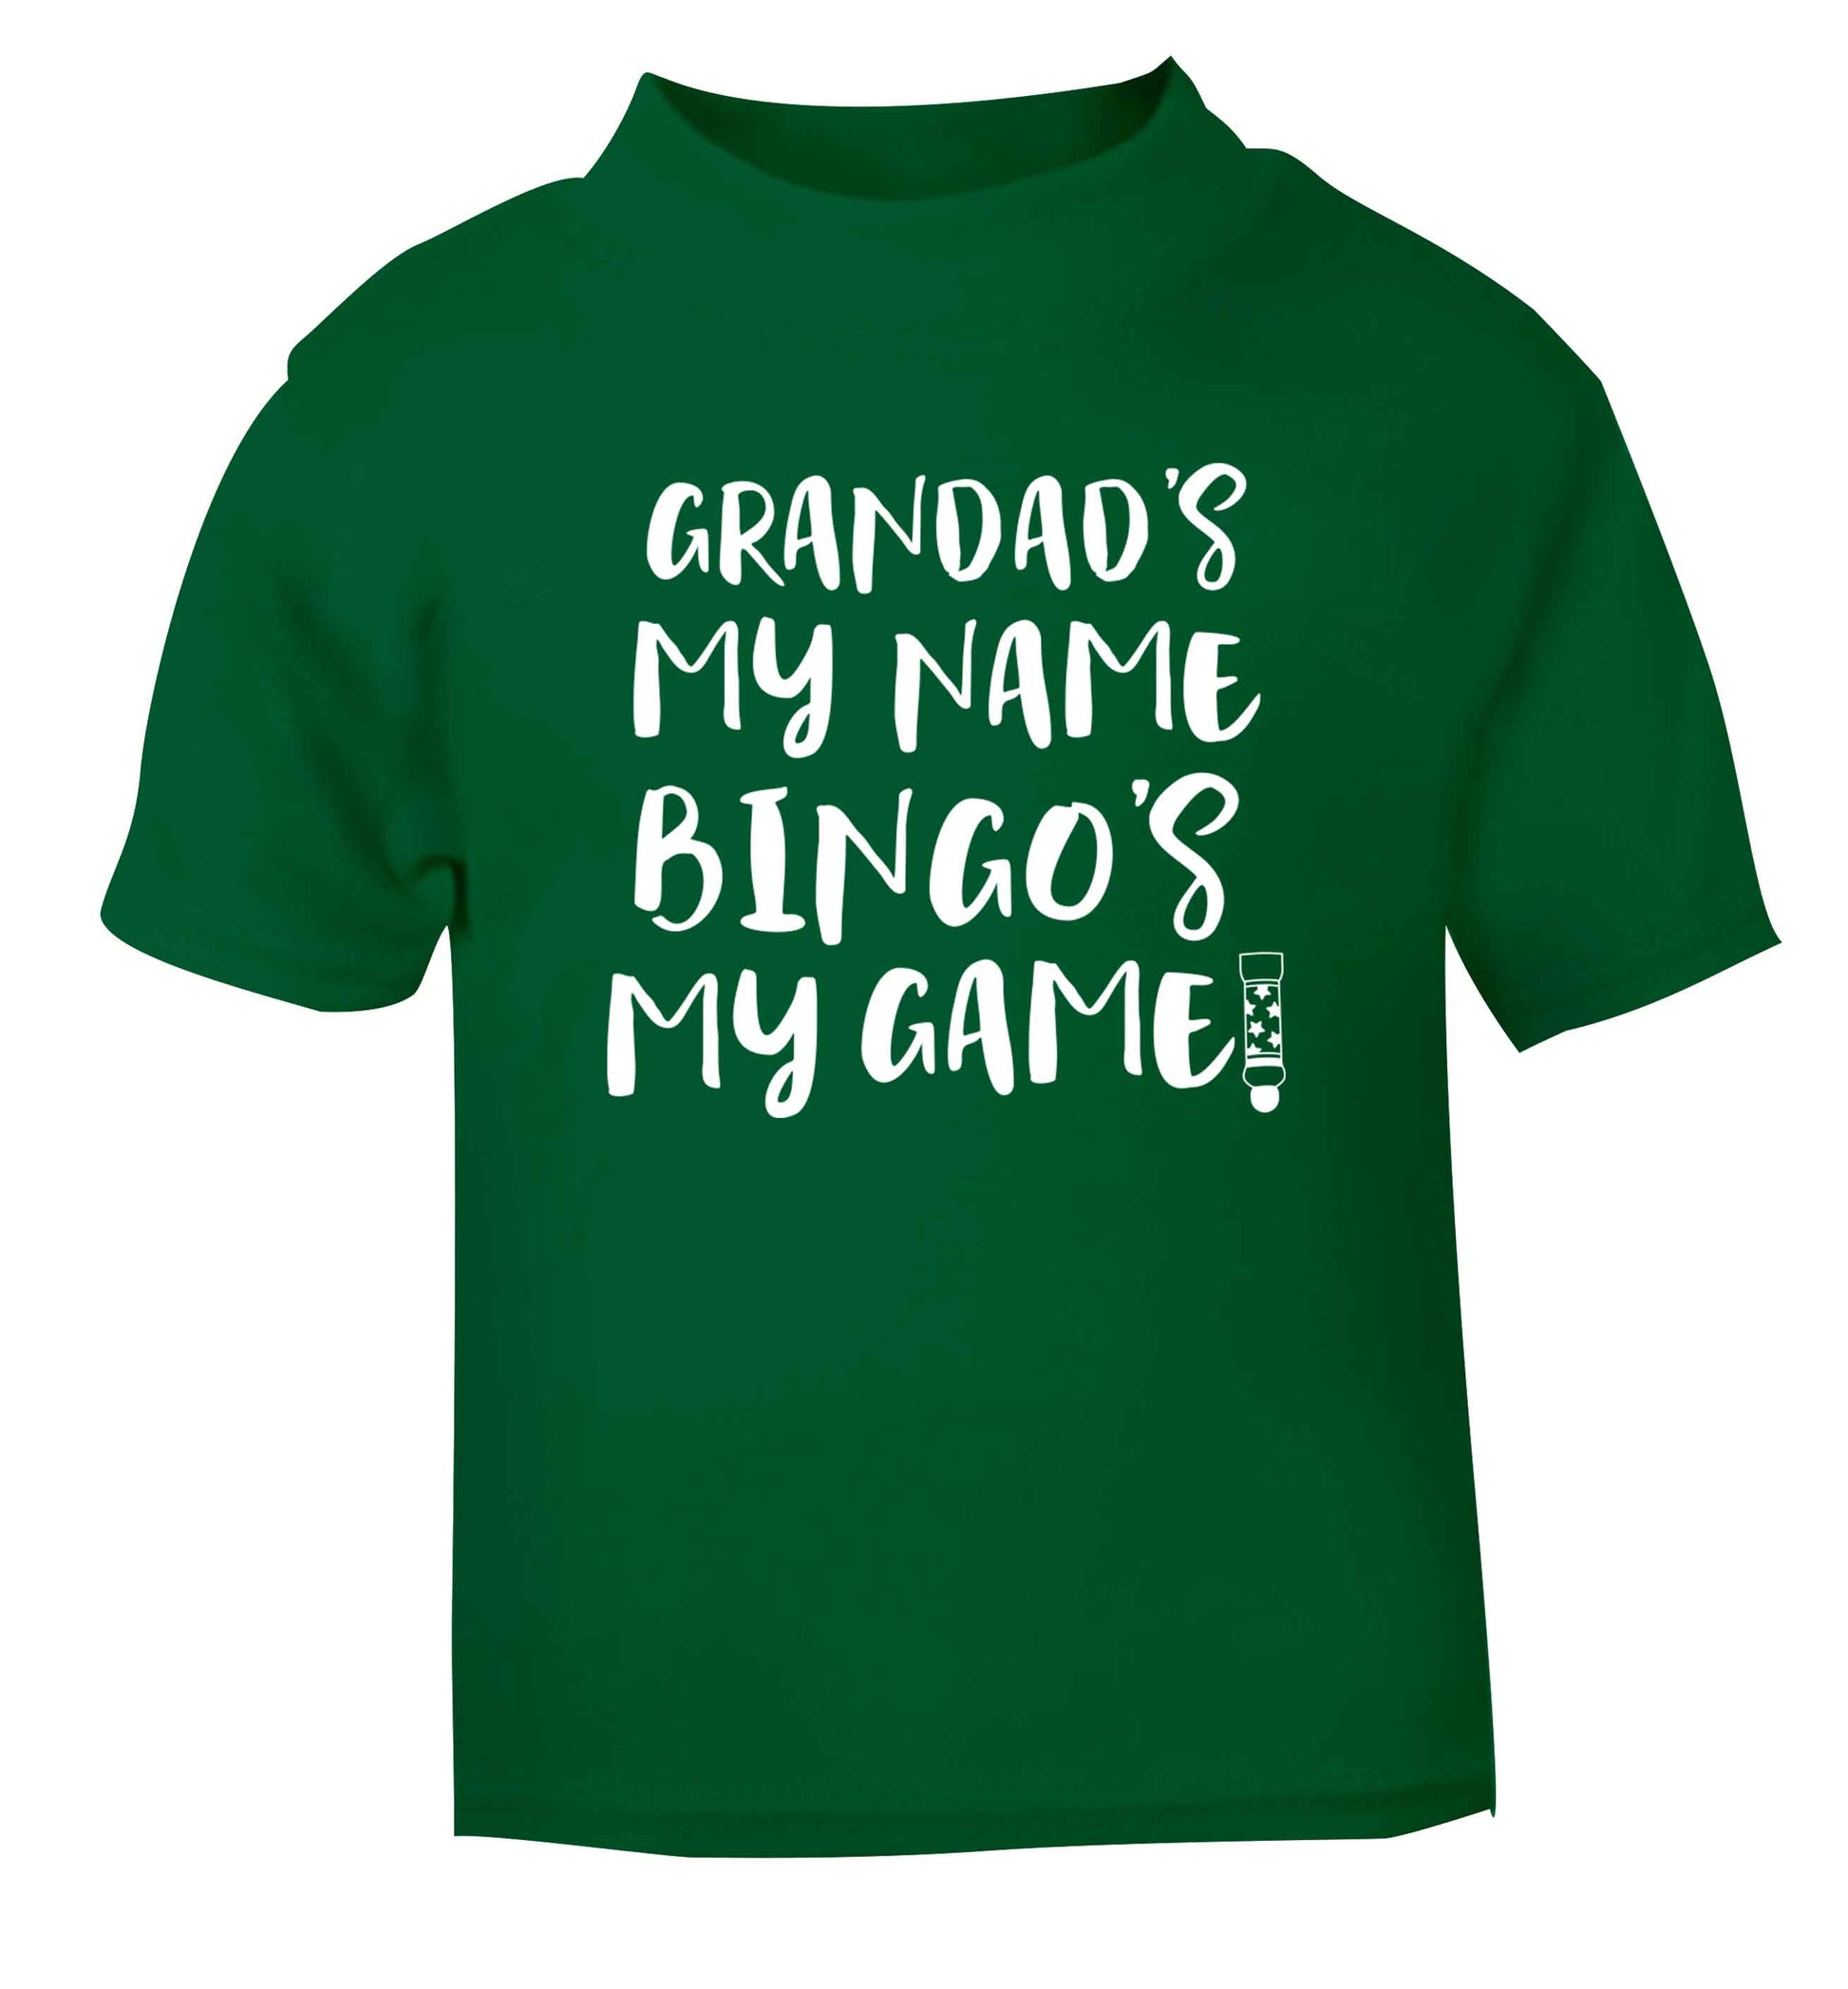 Grandad's my name bingo's my game! green Baby Toddler Tshirt 2 Years